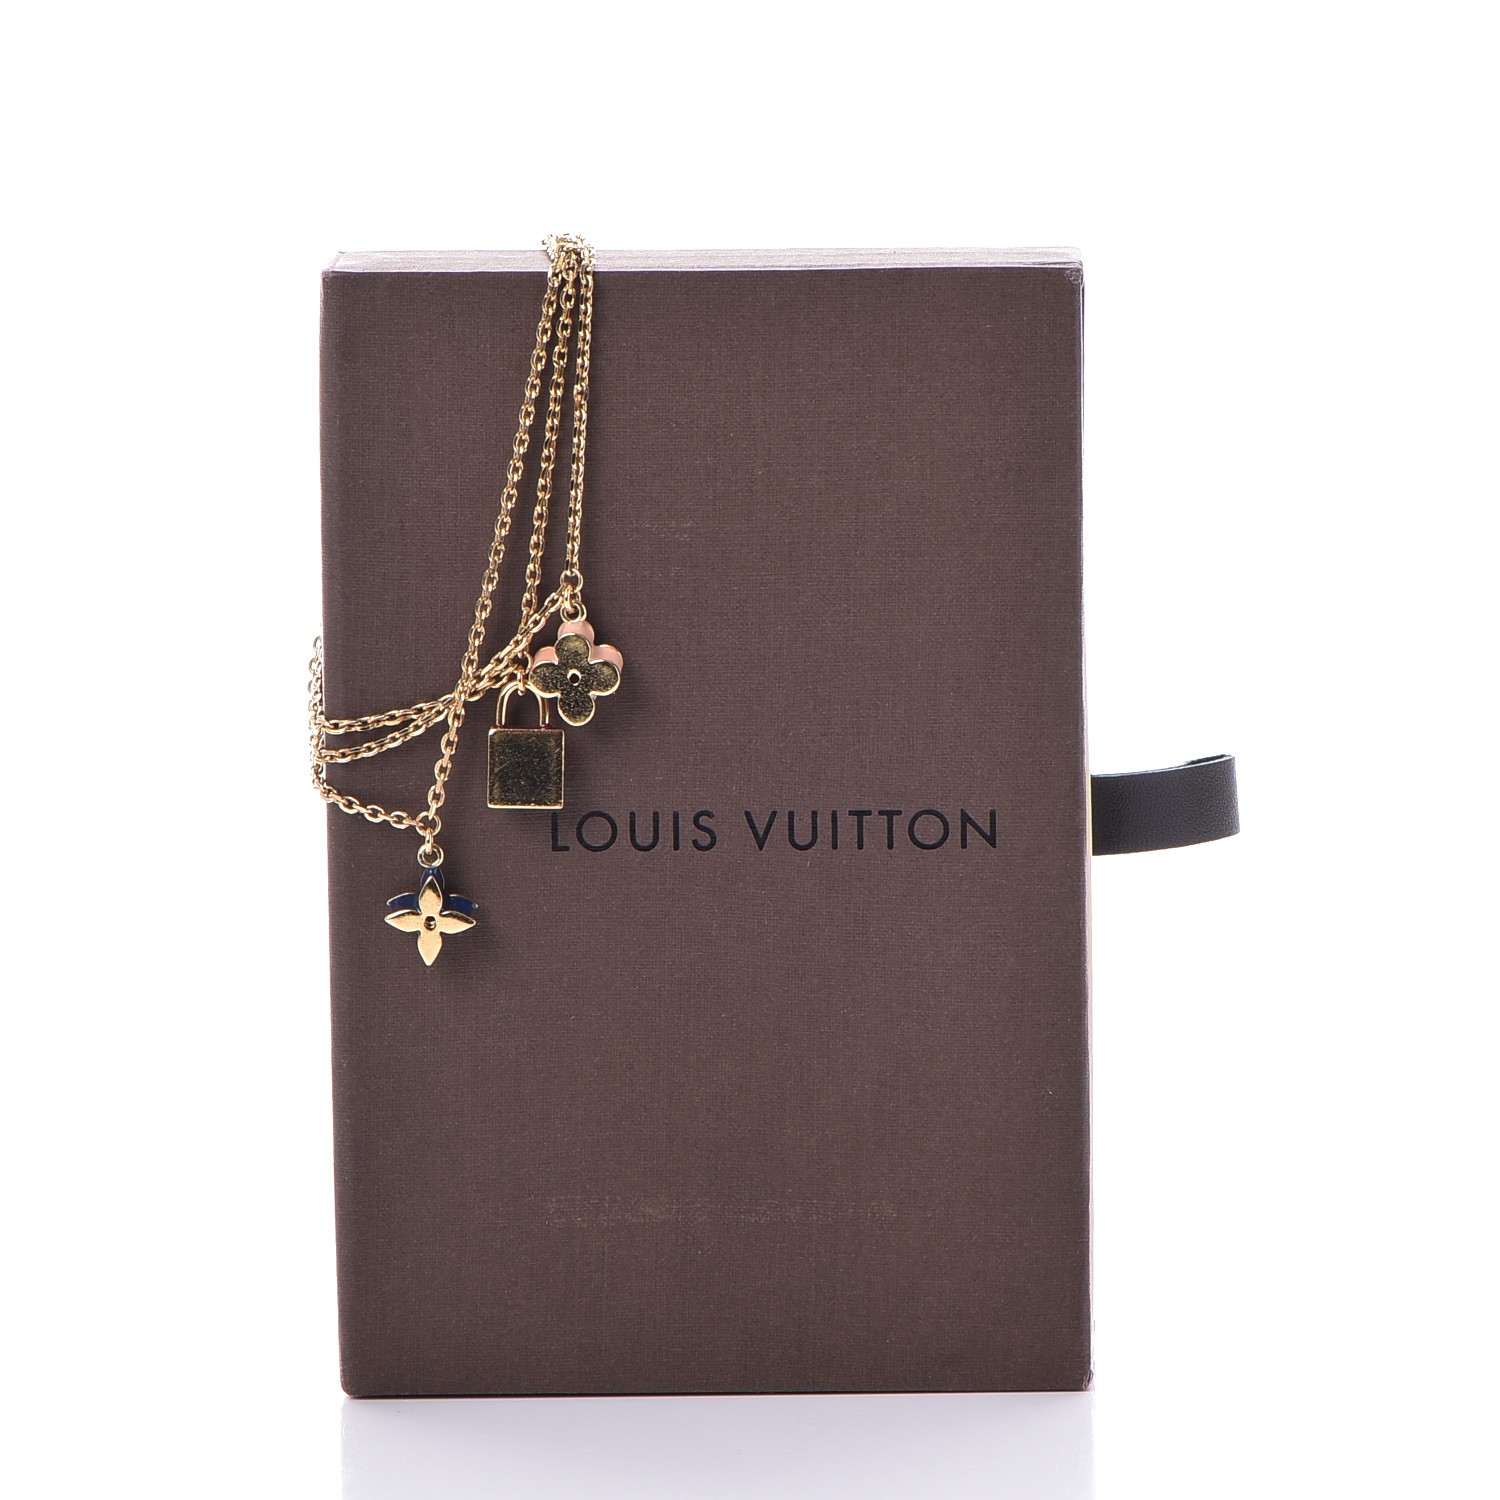 LOUIS VUITTON LV And Me Letter M Bracelet Gold 361939